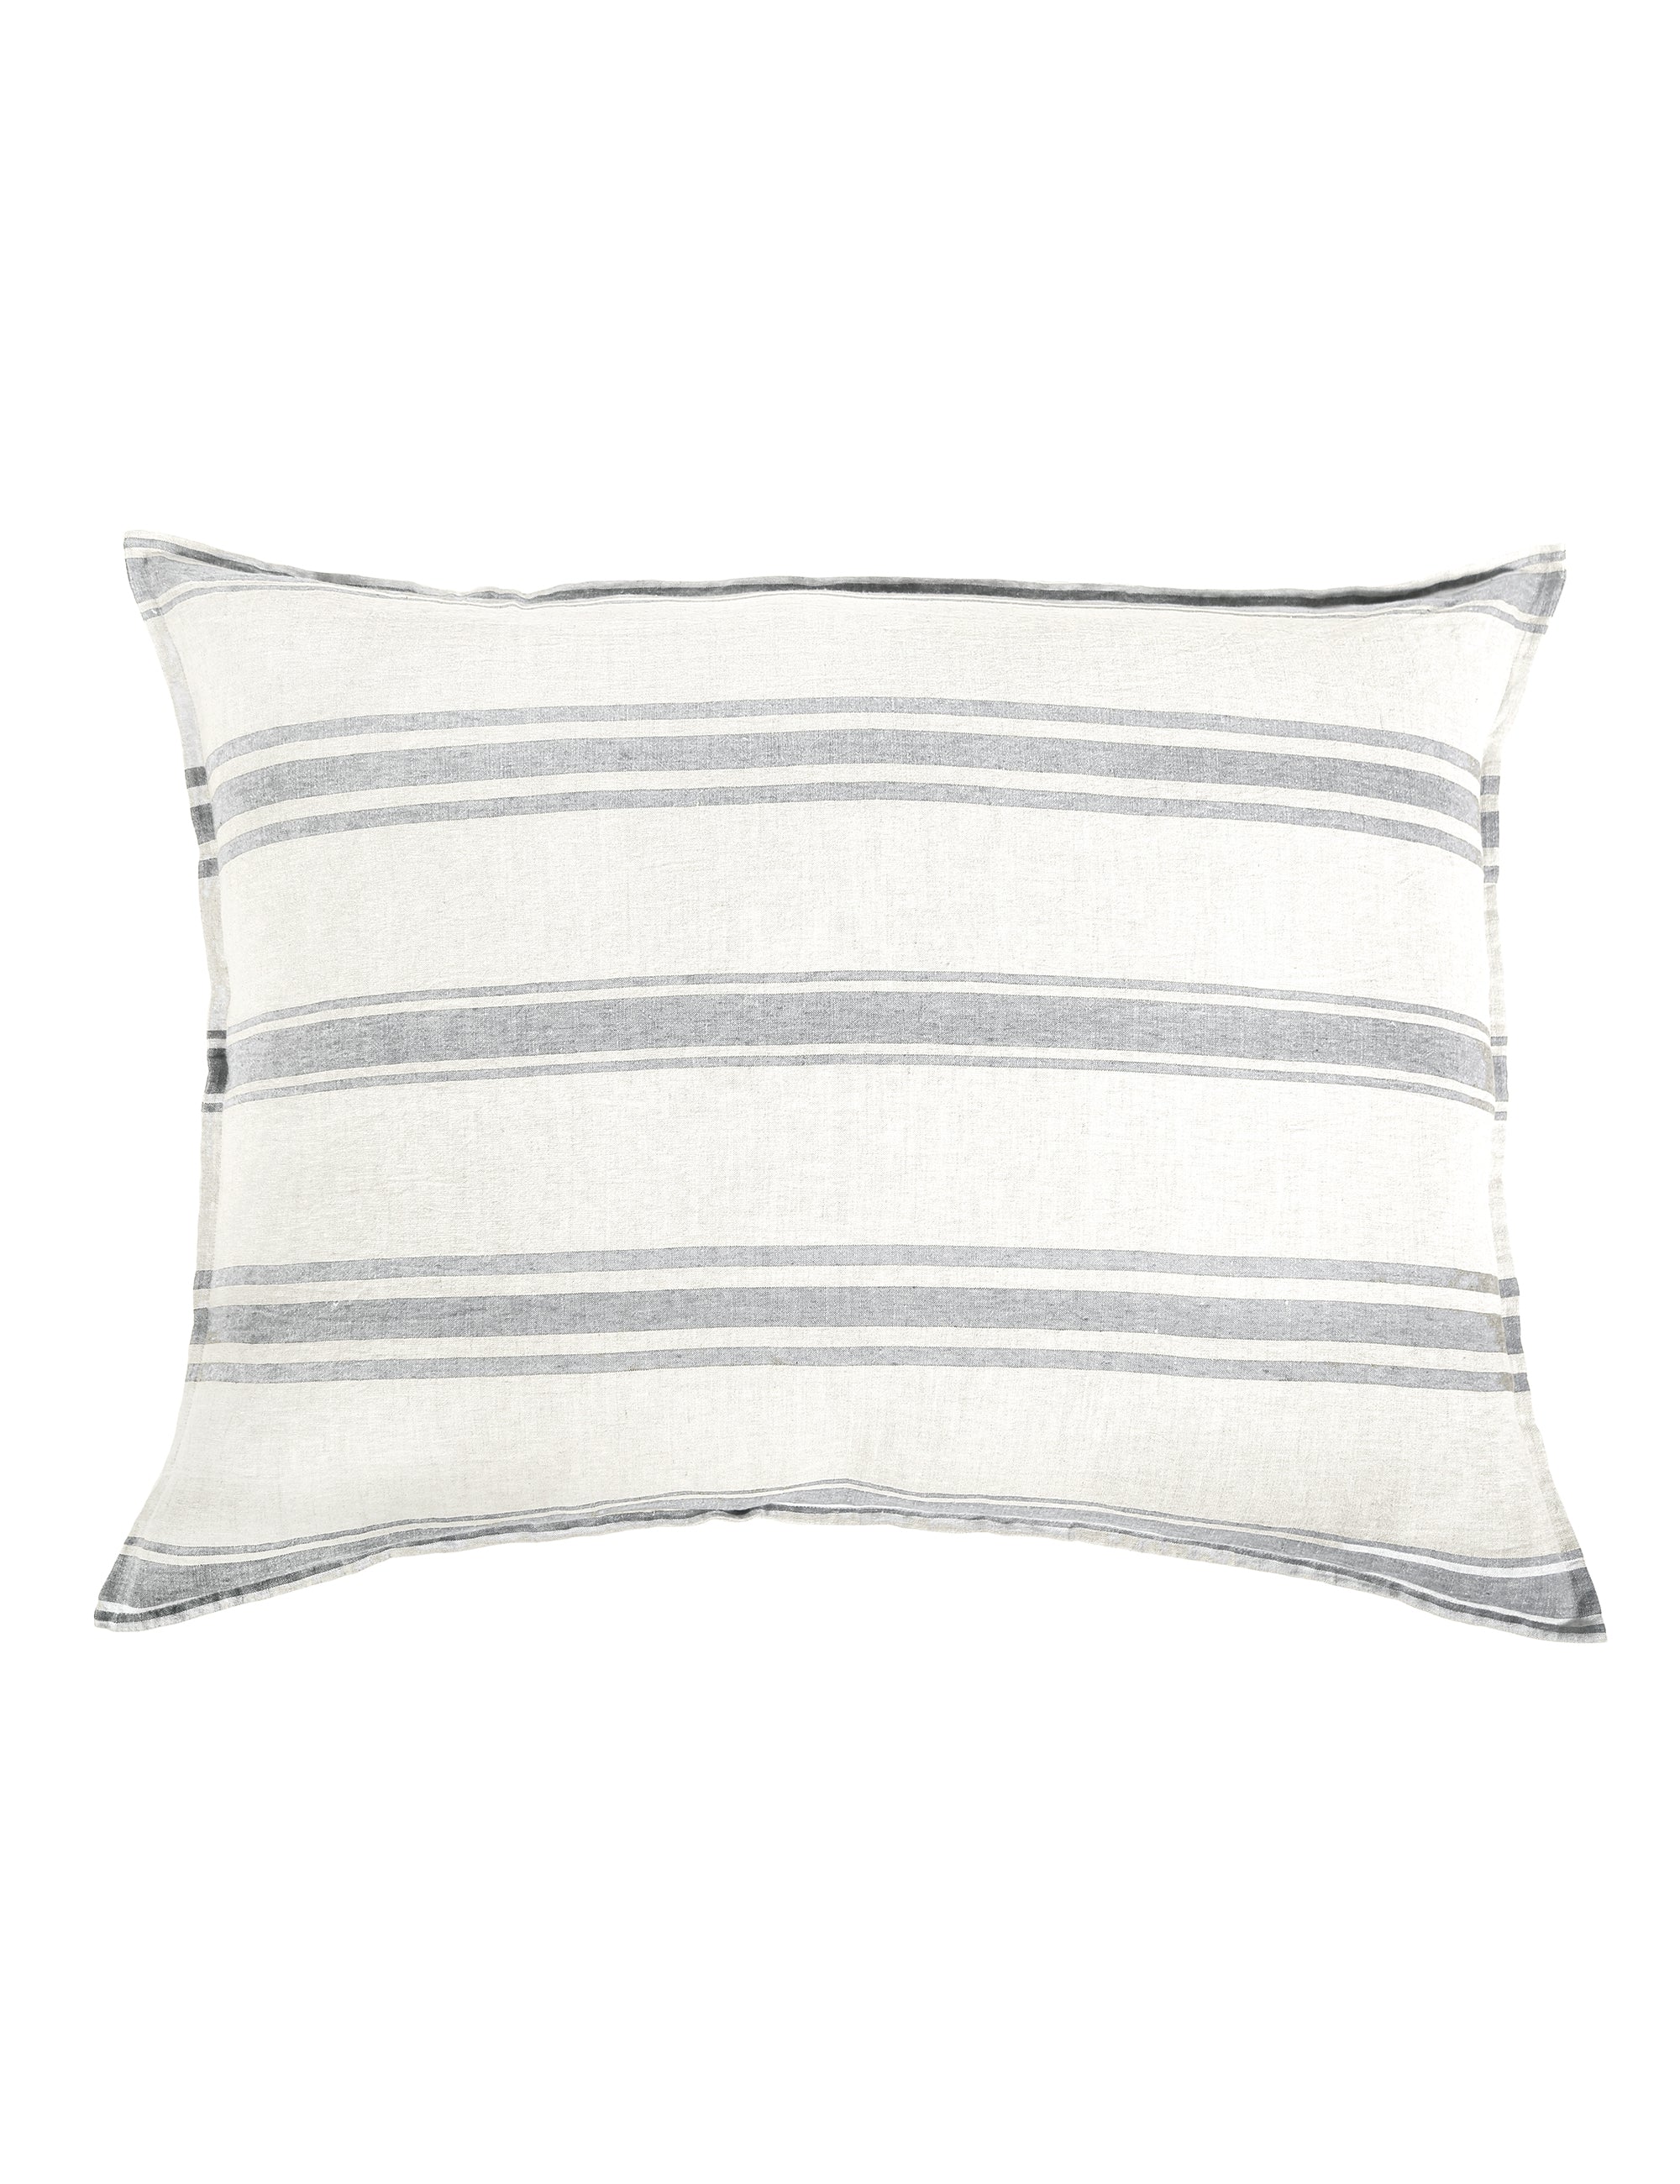 jackson - cream/grey color - king pillow - pom pom at home